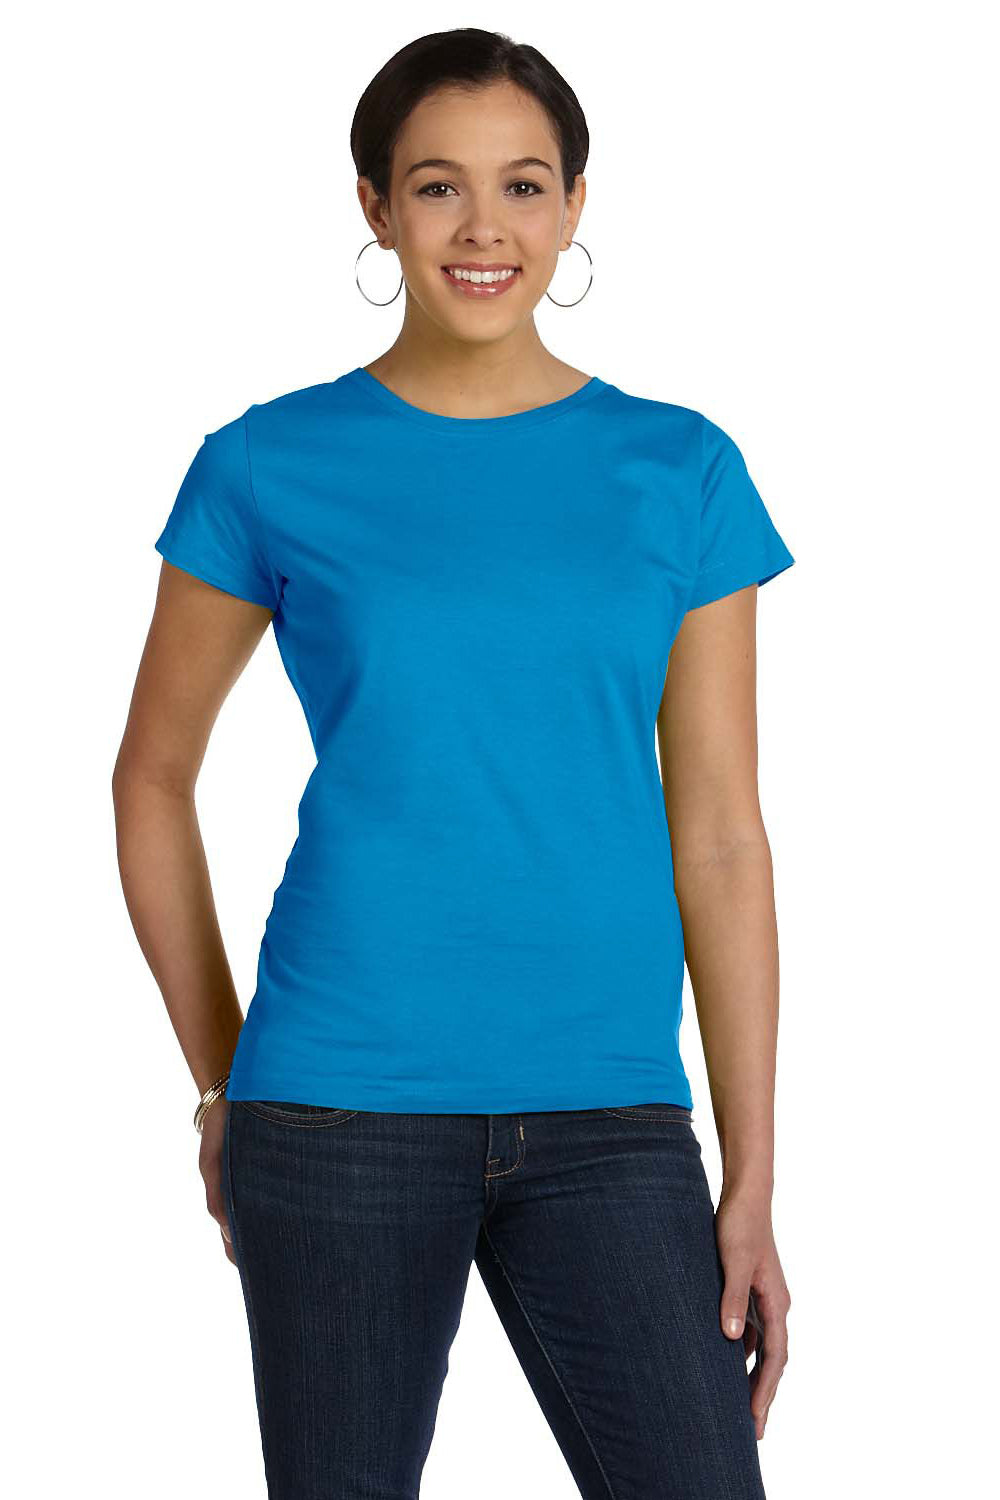 LAT 3516 Womens Fine Jersey Short Sleeve Crewneck T-Shirt Cobalt Blue Front